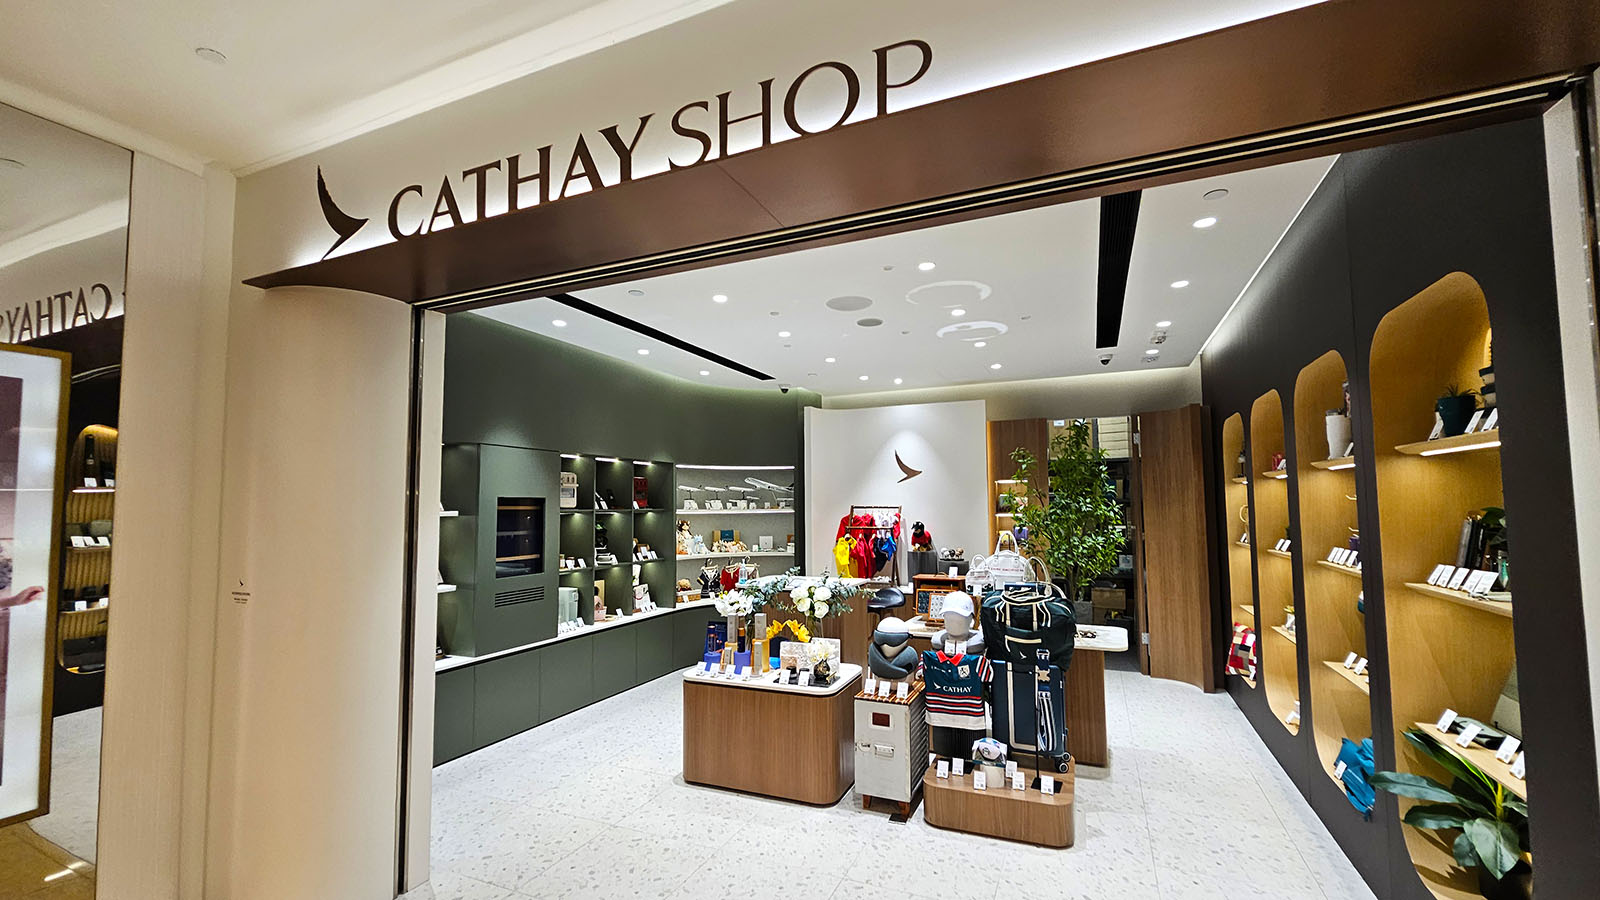 Looking at Cathay Shop